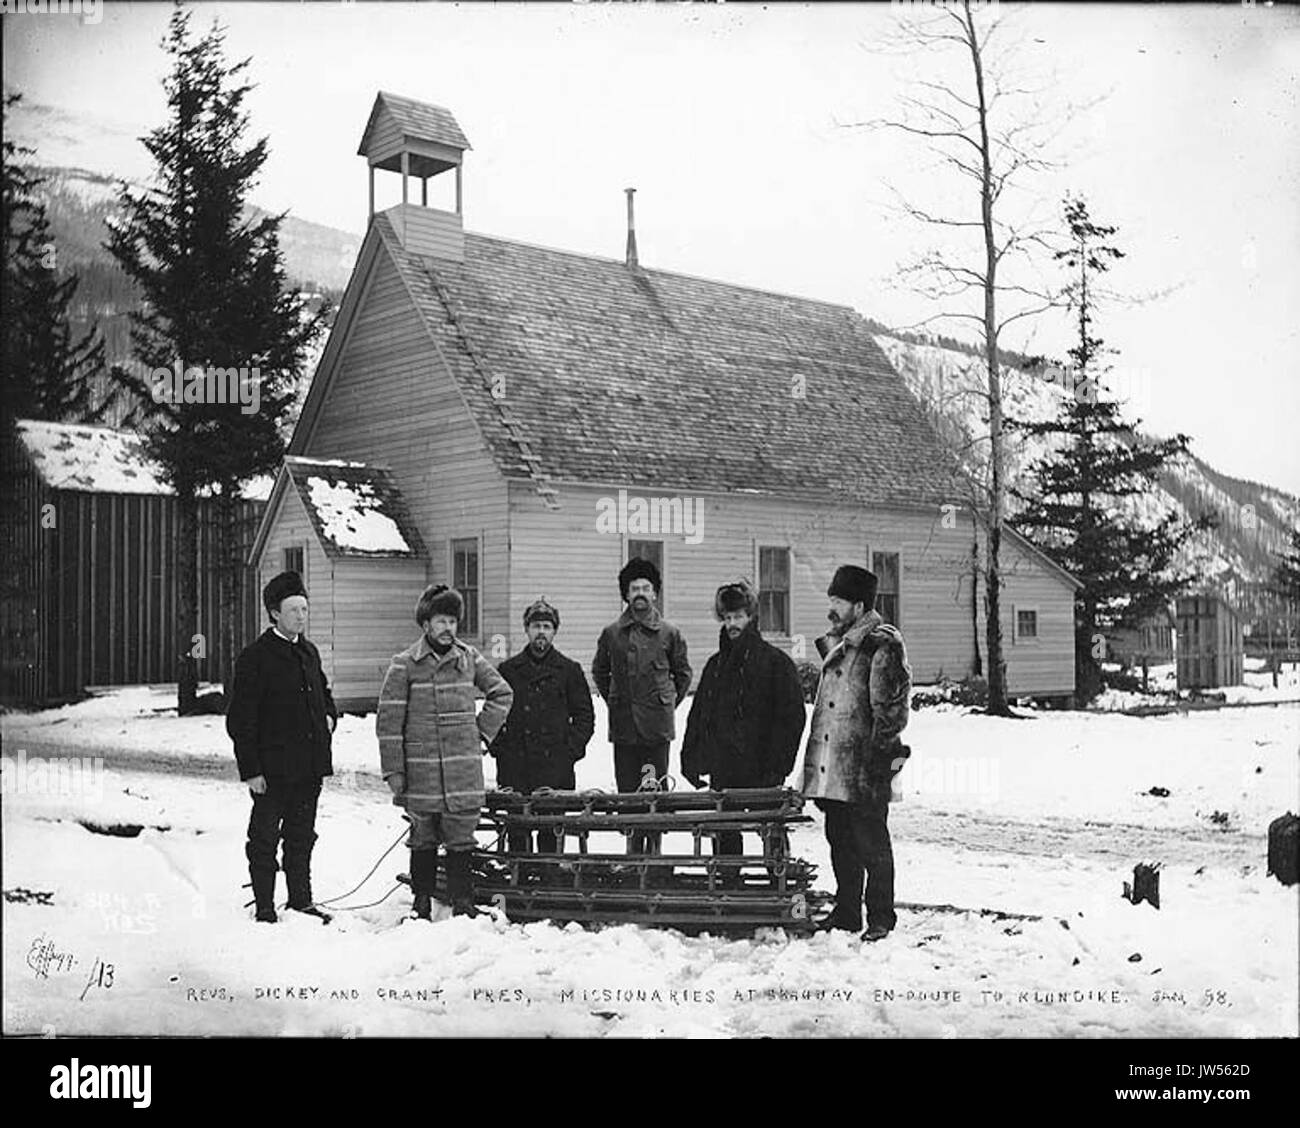 Les missionnaires presbytériens Revs Dickey et Grant en route vers le Klondike, Skagway, Alaska, janvier 1898 (HEGG 635) Banque D'Images